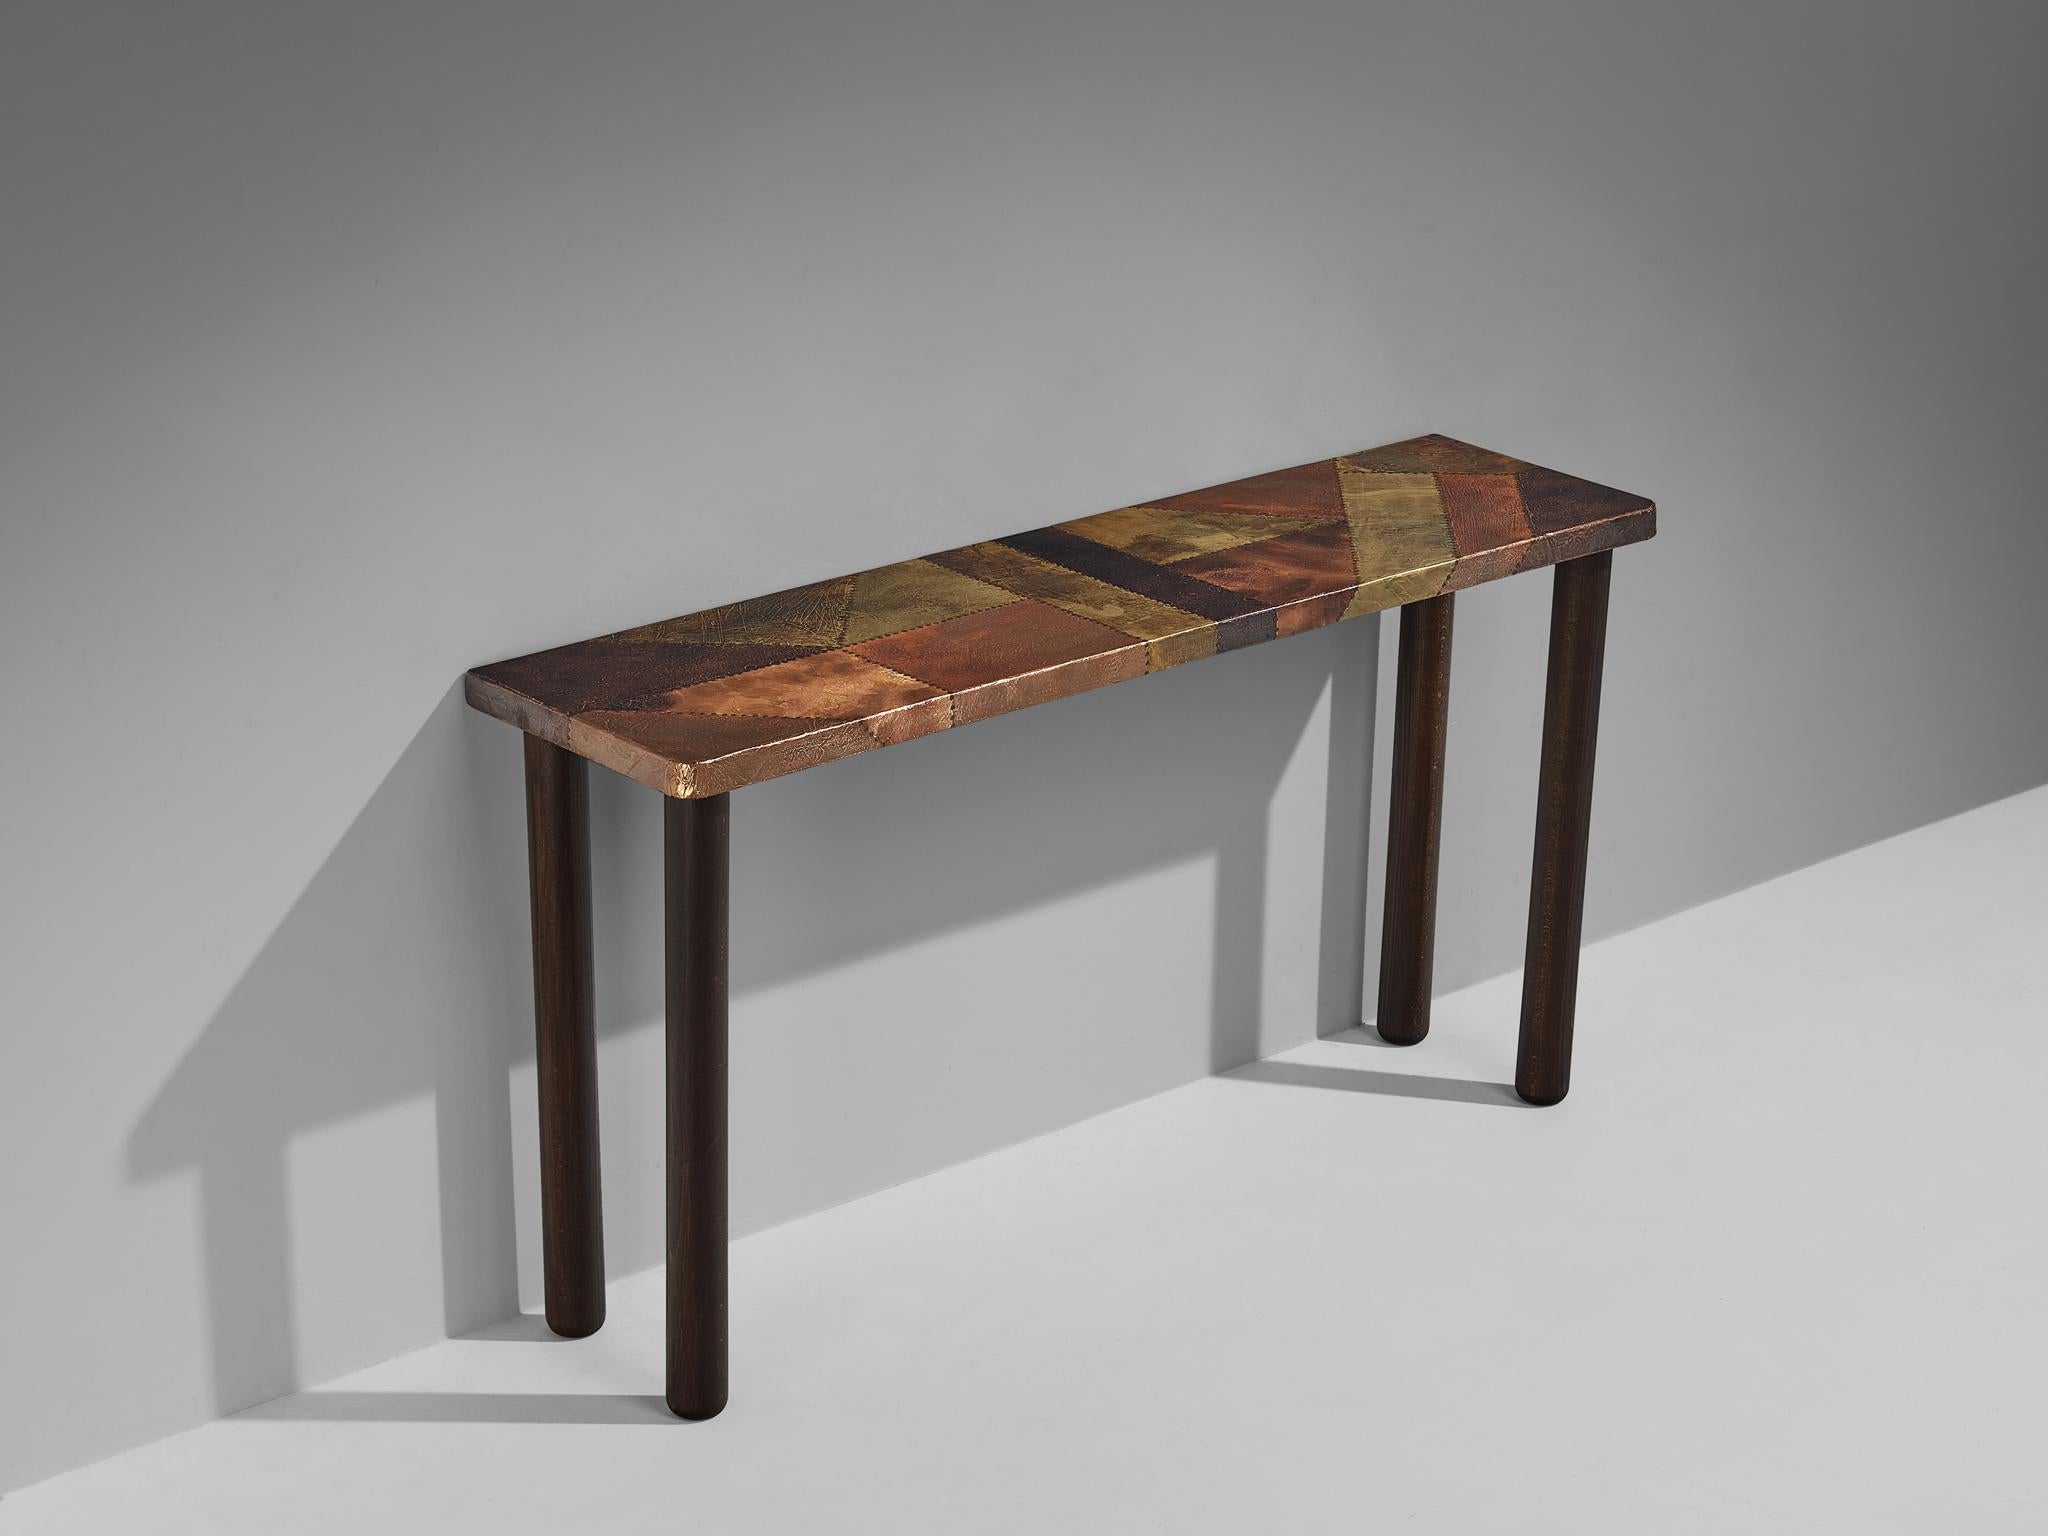 Lorenzo Burchiellaro, table console, cuivre, bois teinté, Italie, années 1960

Cette magnifique table console est créée par le designer et sculpteur italien Lorenzo Burchiellaro (1933-2017) dans les années 1960. Le cuivre est en très bel état,